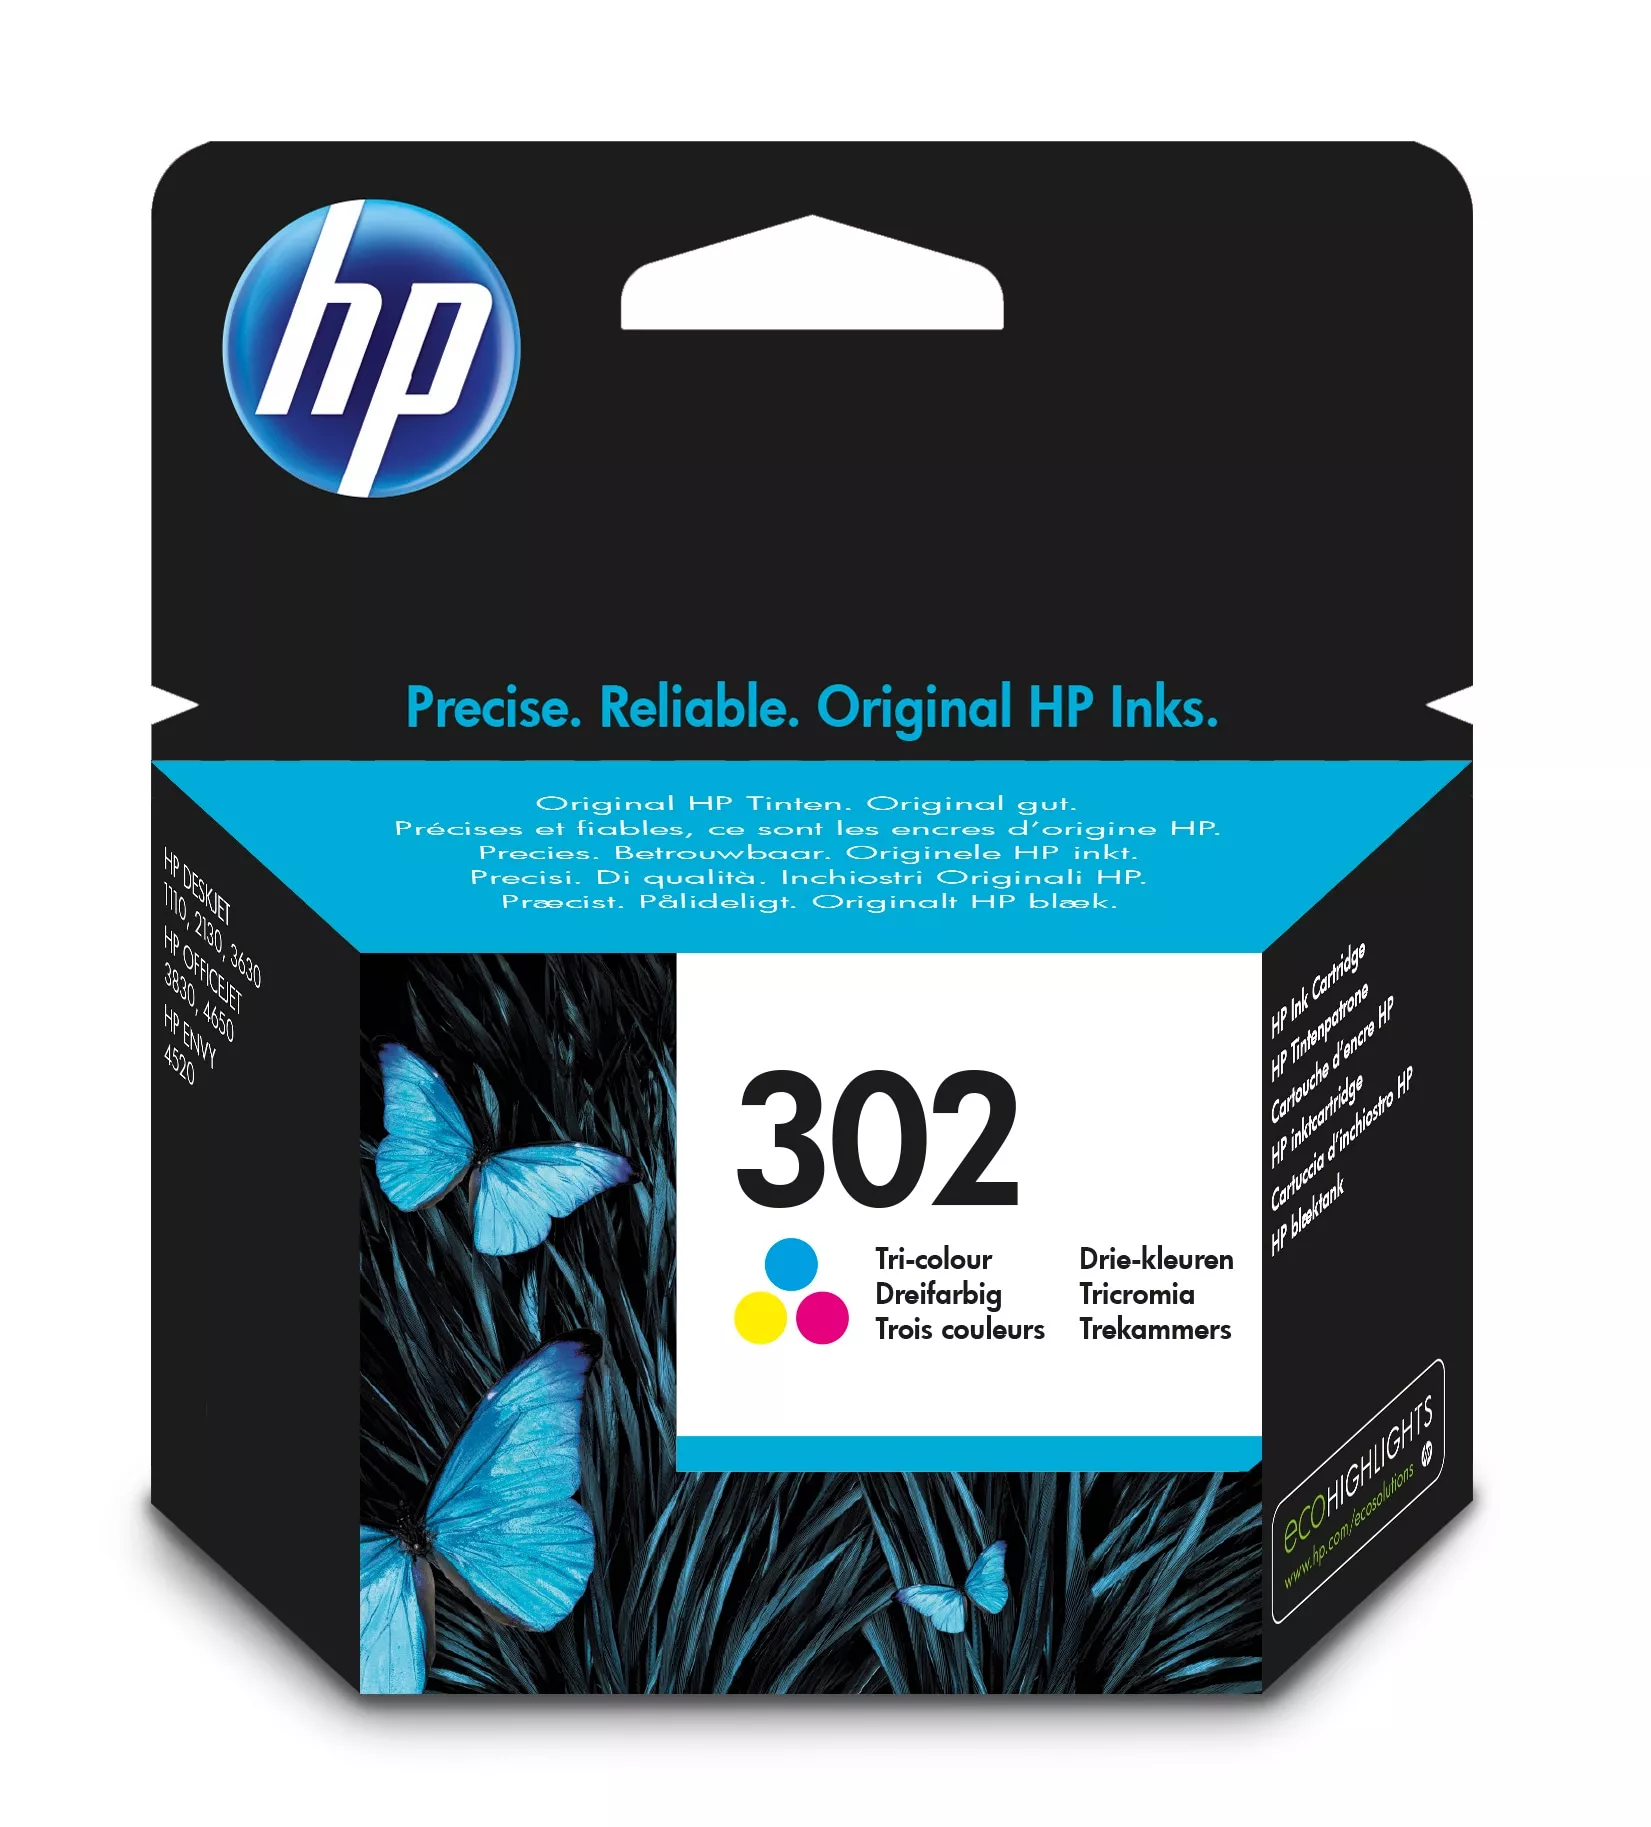 Vente HP 302 original Ink cartridge F6U65AE UUS Tri-color au meilleur prix